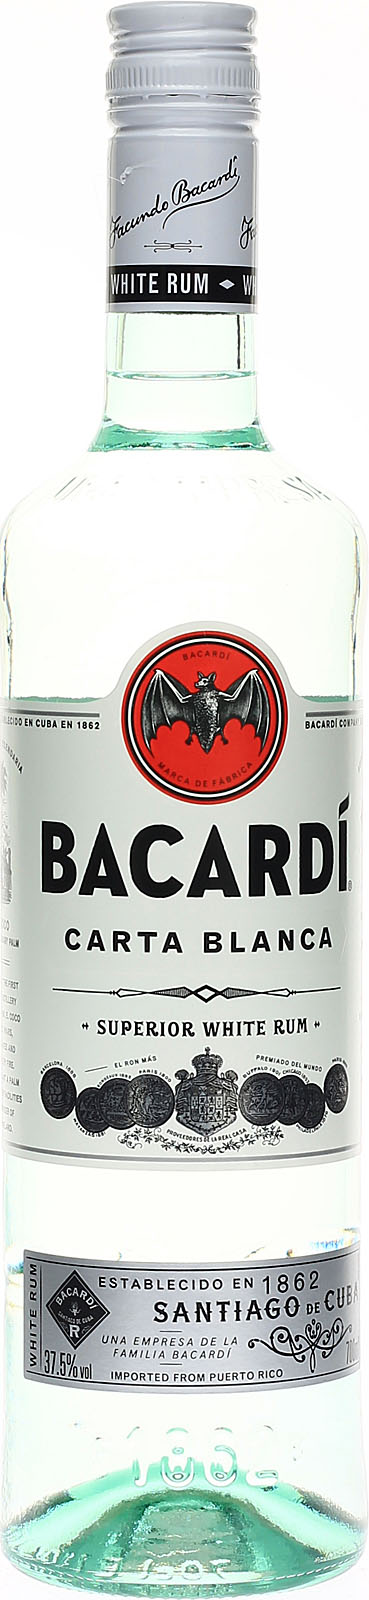 Bacardi Carta Blanca - Der White 0,7 Rum als Liter-Flas